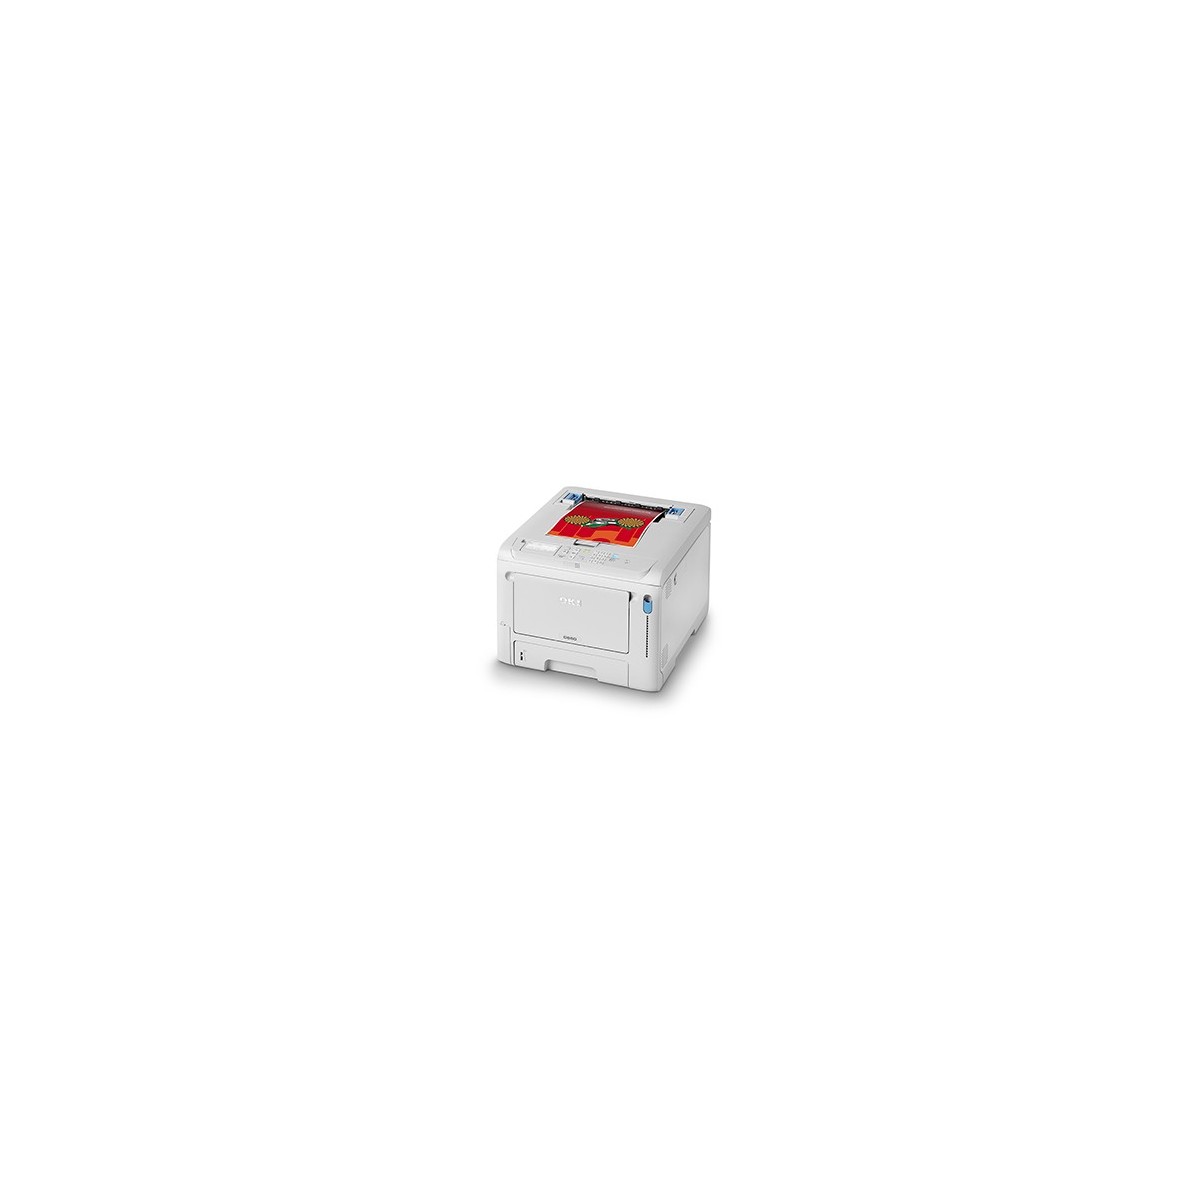 OKI C 650 DN Drucker 09006144 - Printer - Laser/Led